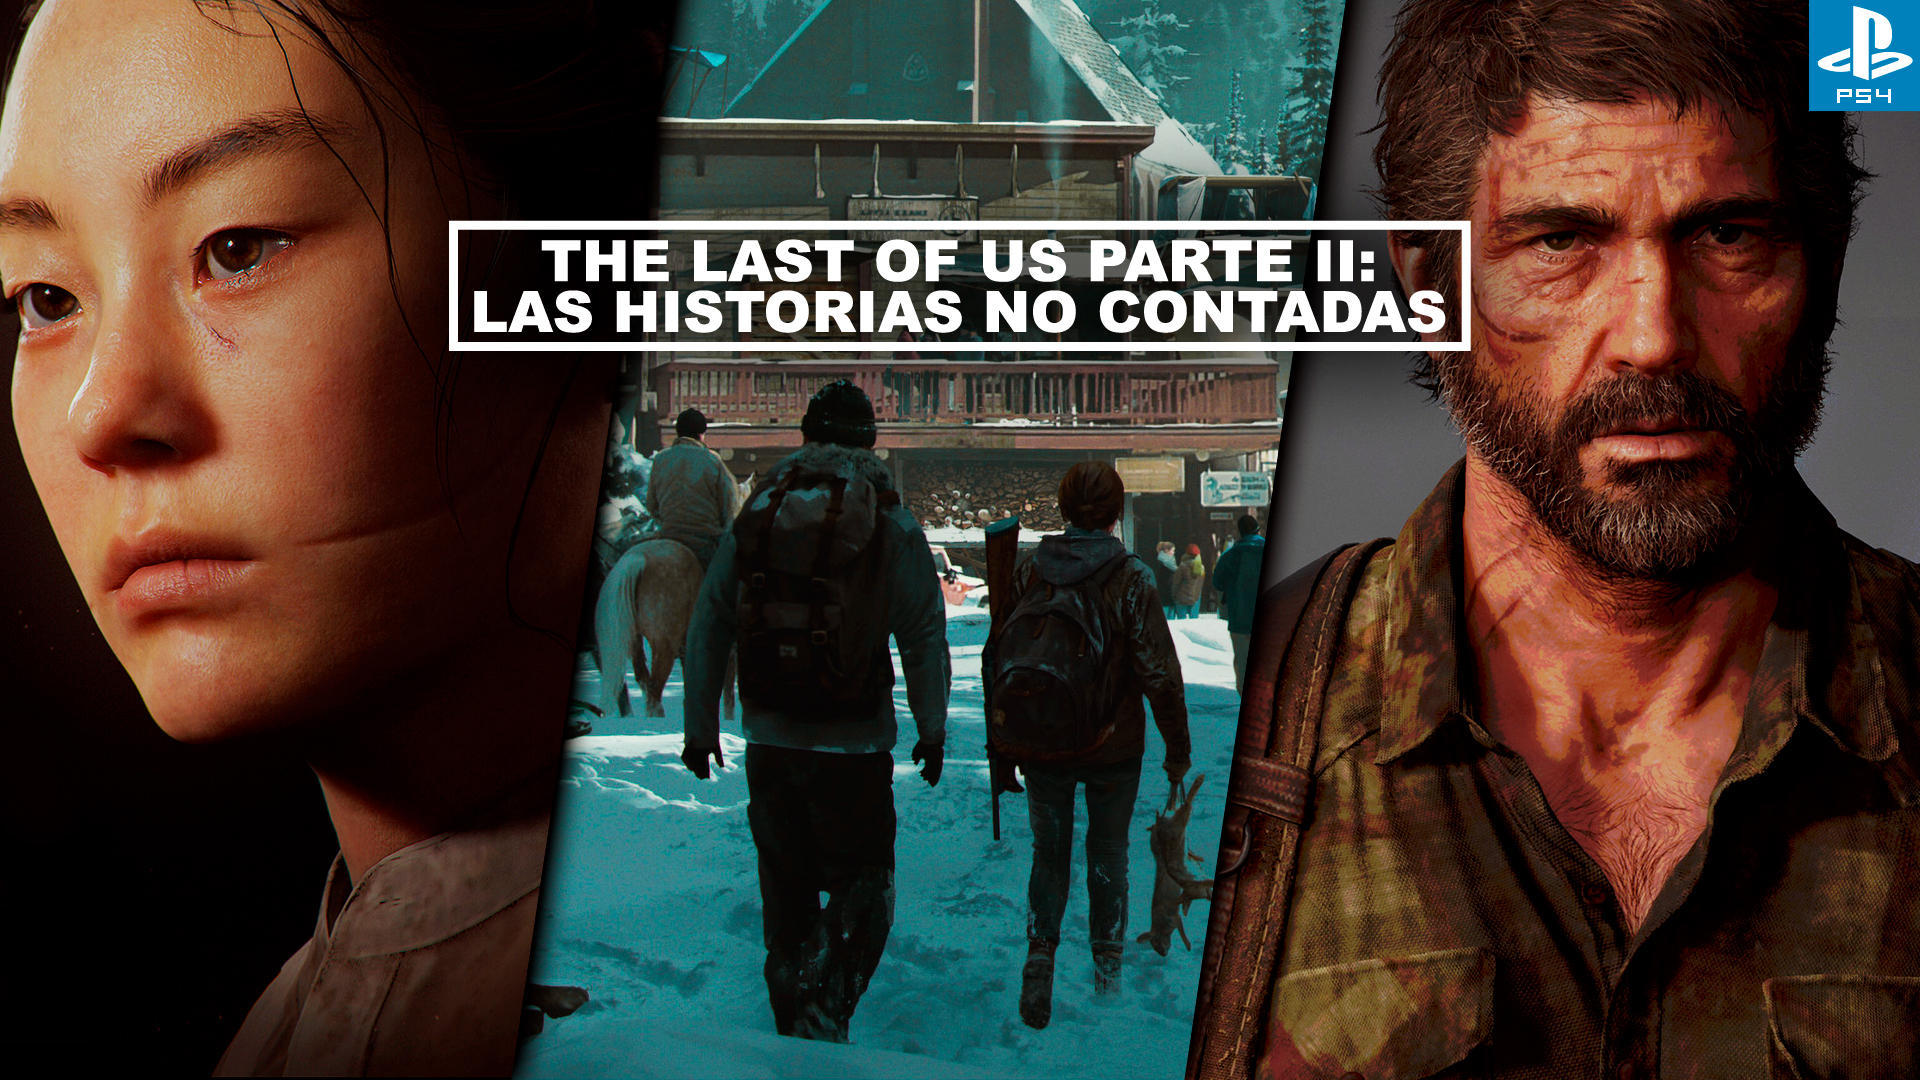 The Last of Us Parte II: Las historias no contadas